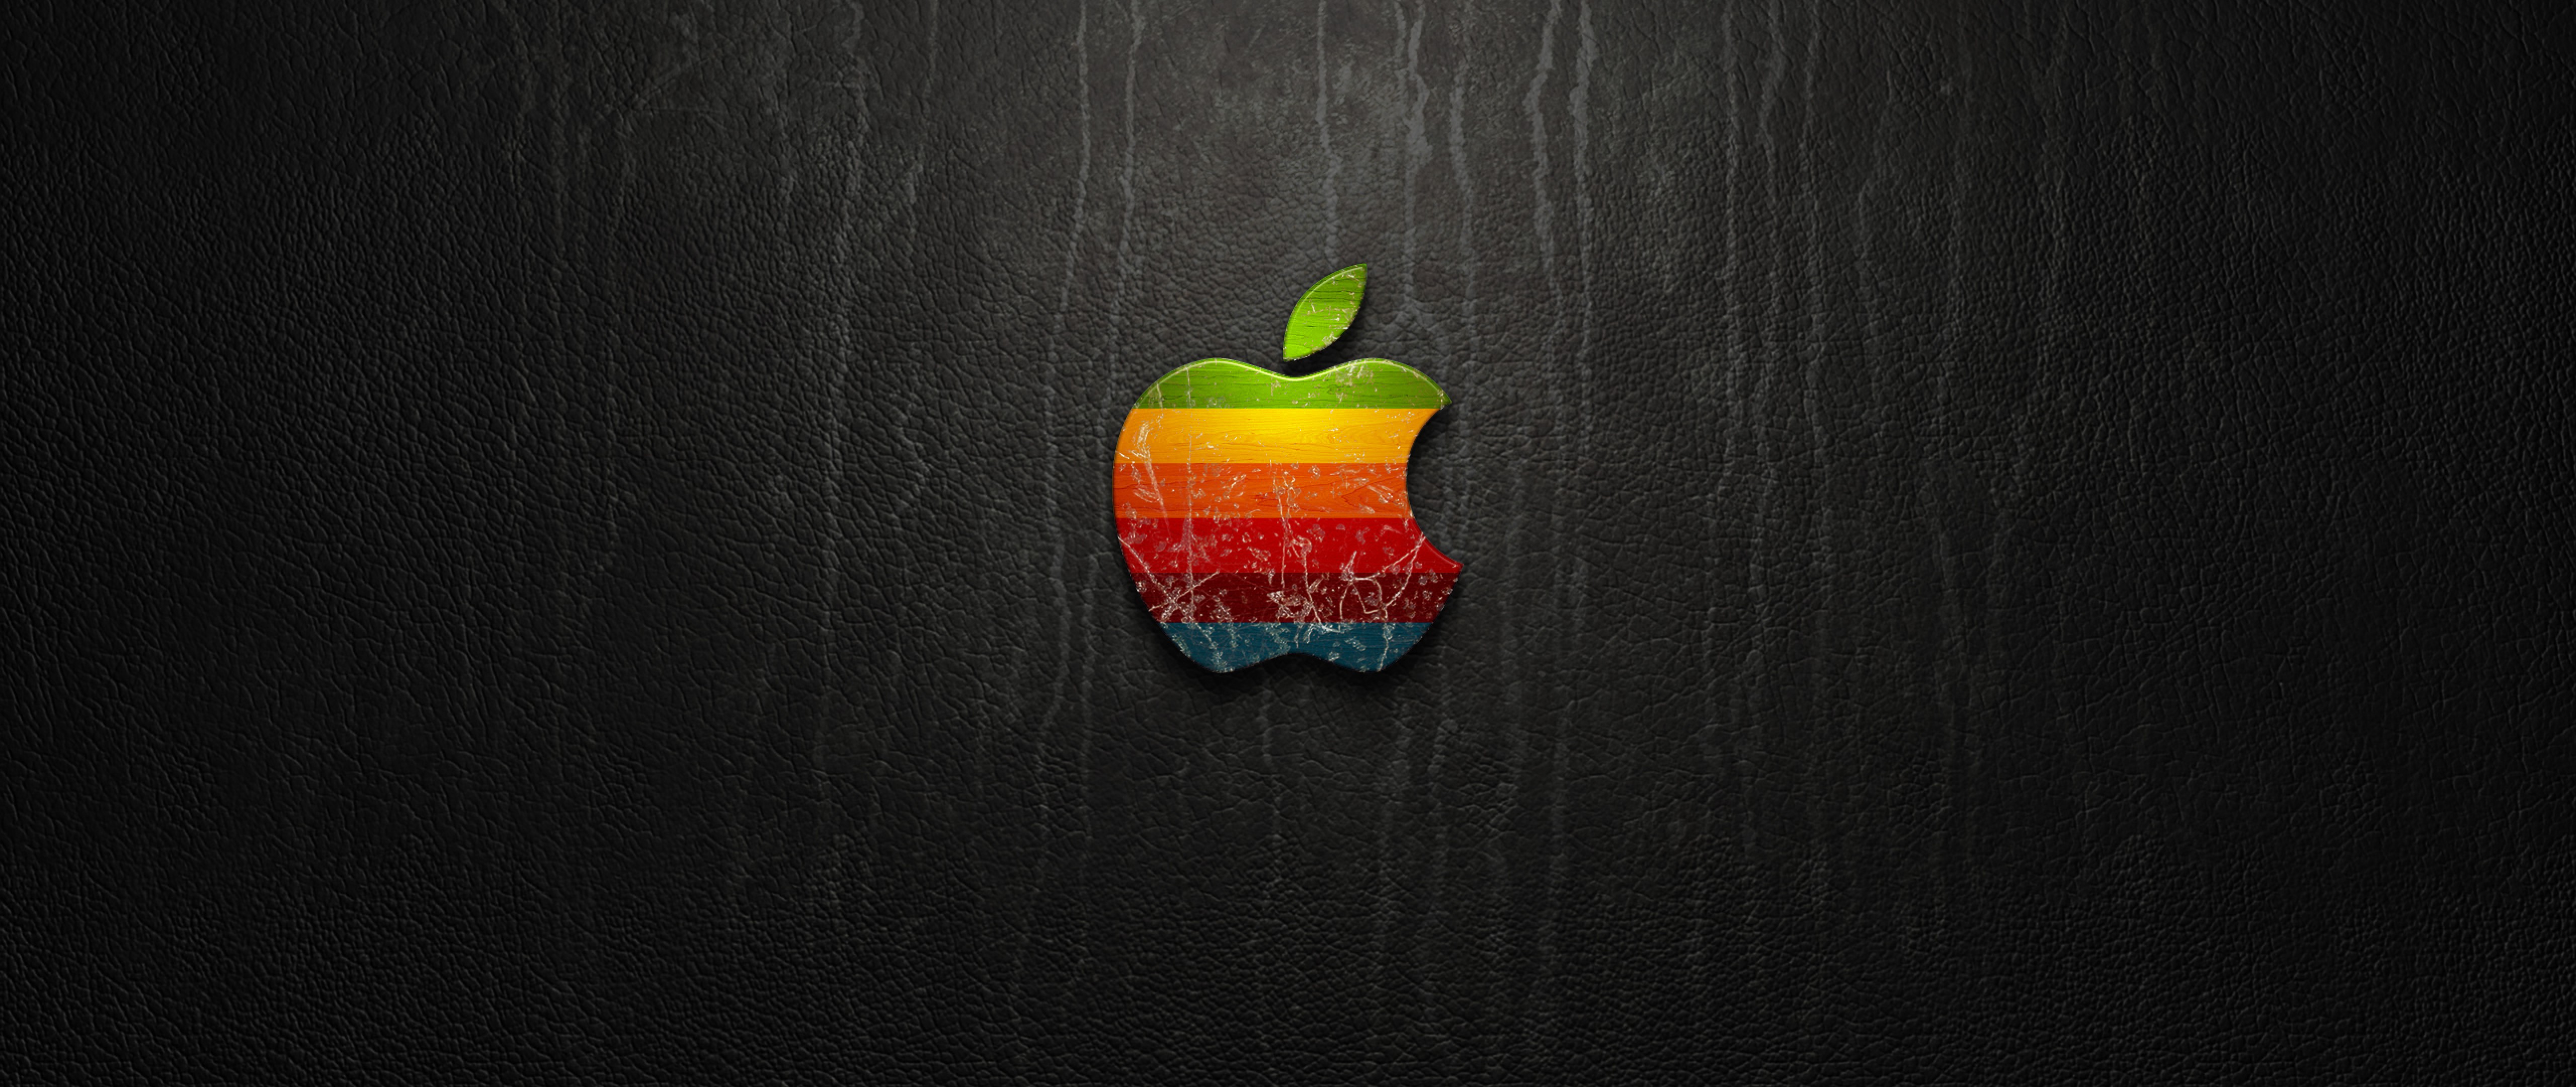 Coloured Apple Logo Wallpaper for Desktop and Mobiles 4K Ultra HD